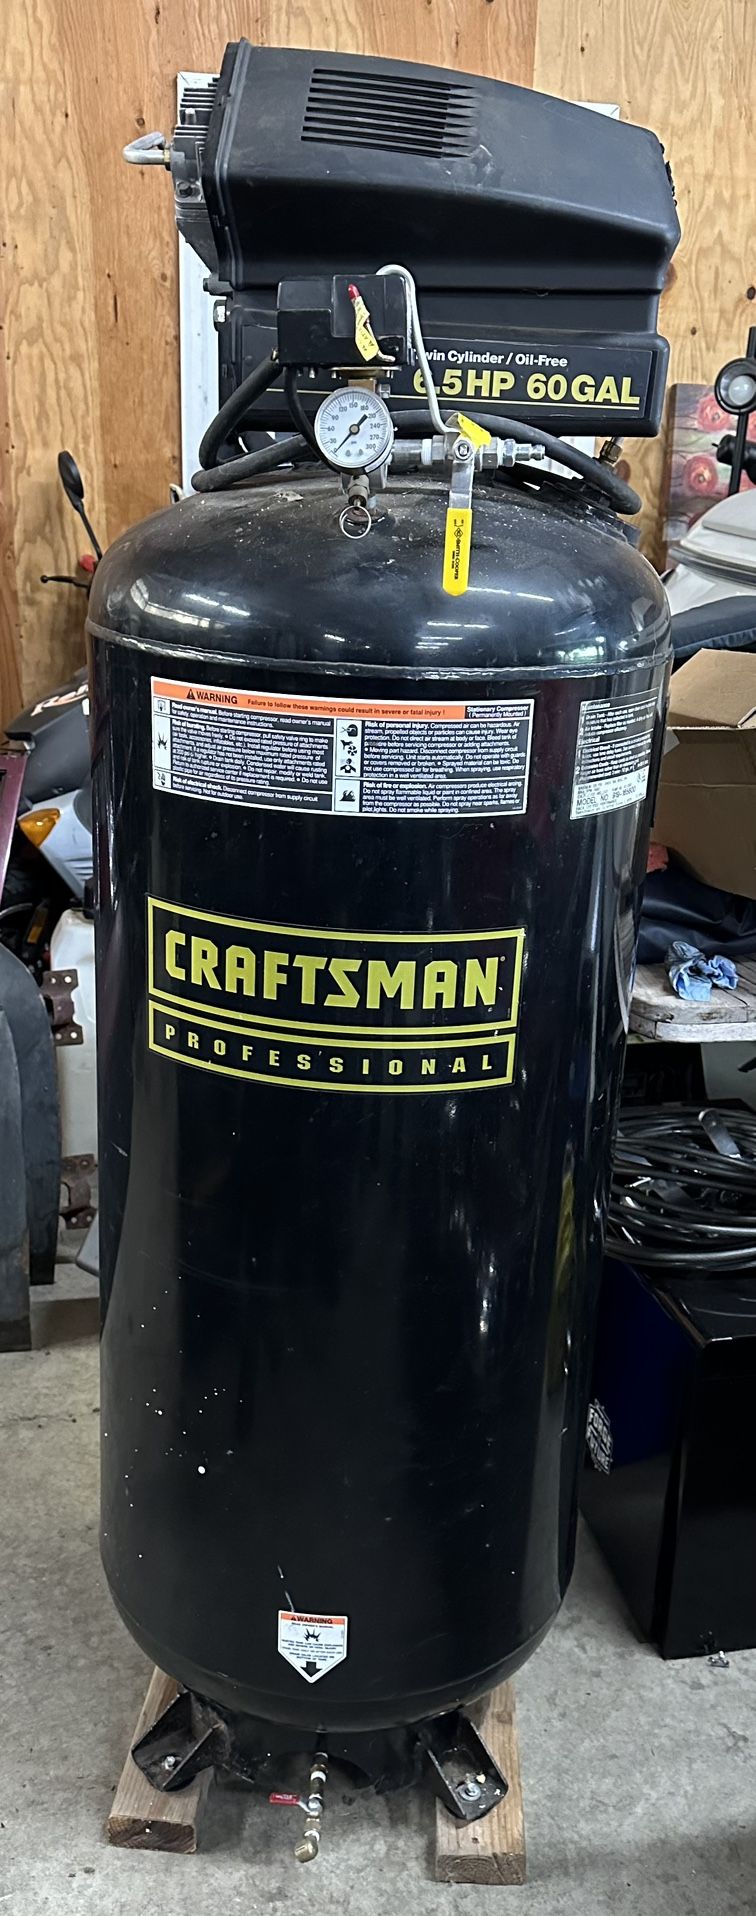 Craftsman Professional Air Compressor 